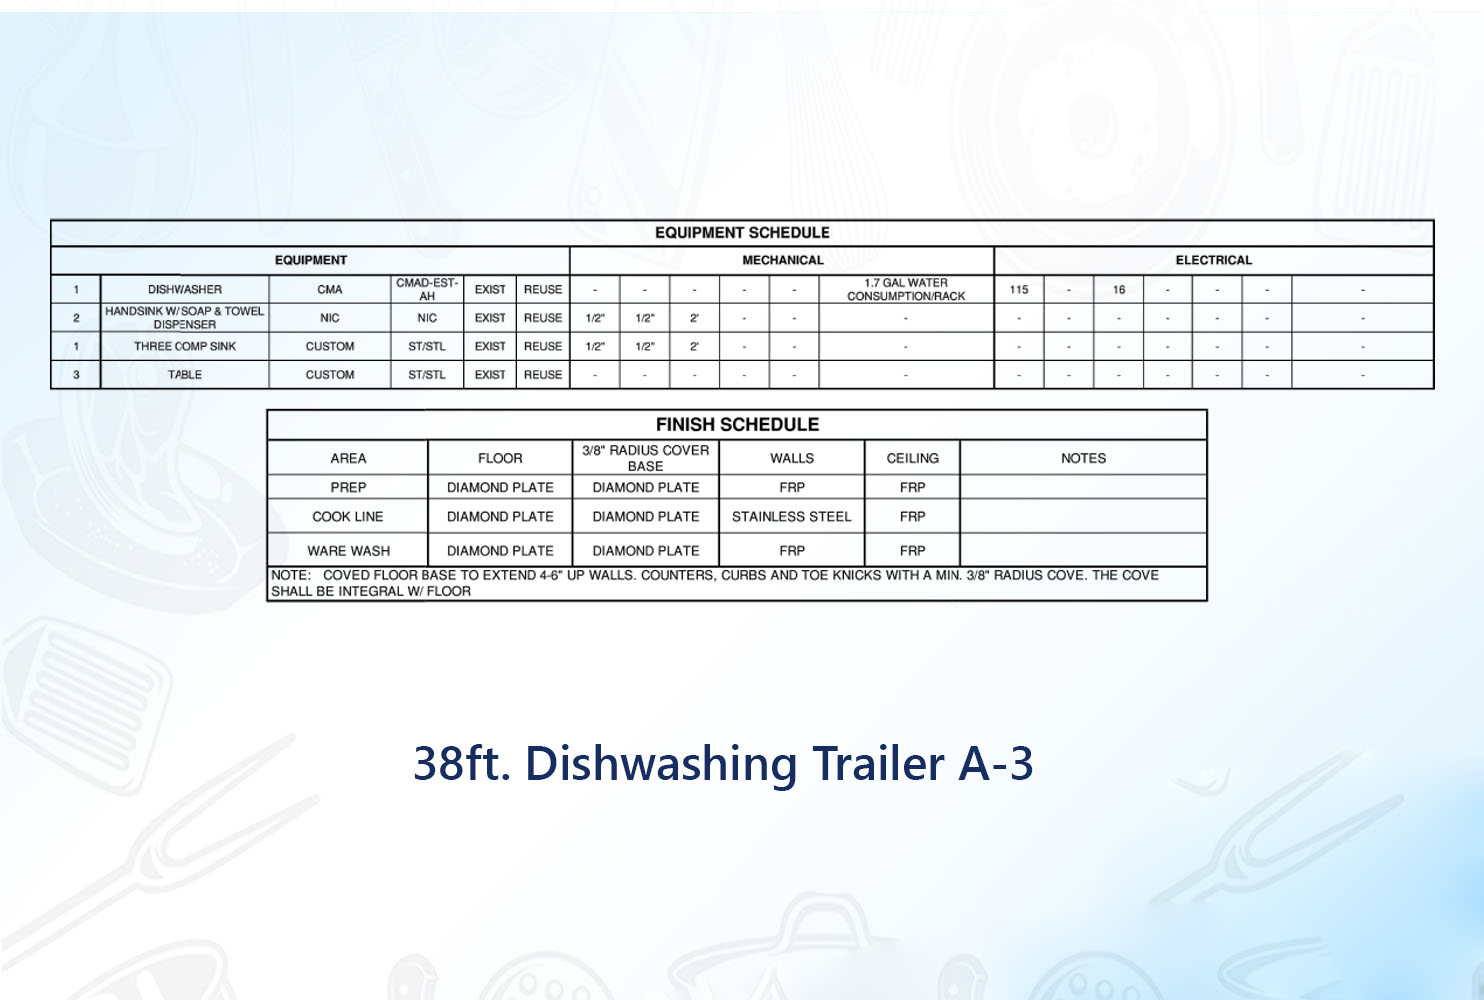 38 ft Dishwashing Trailer A-3